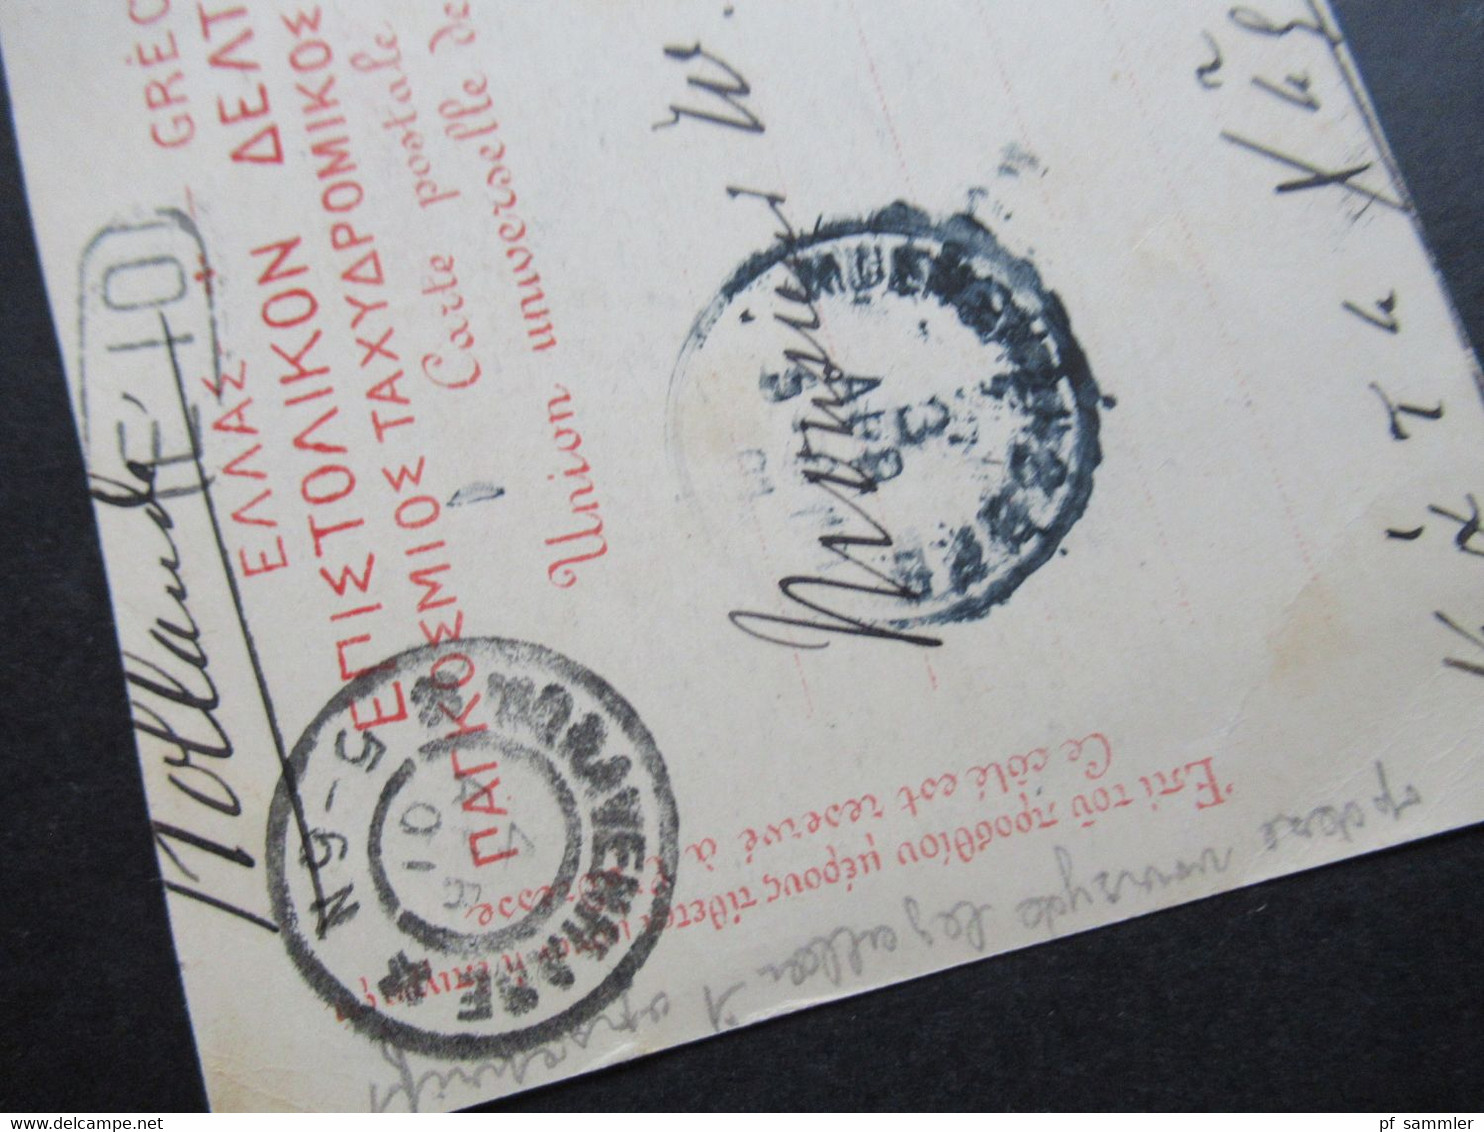 Griechenland 1901 Ganzsache / Bildpostkarte Souvenir de Athenes Propylees mit Zusatzfrankatur nach Den Haag Holland